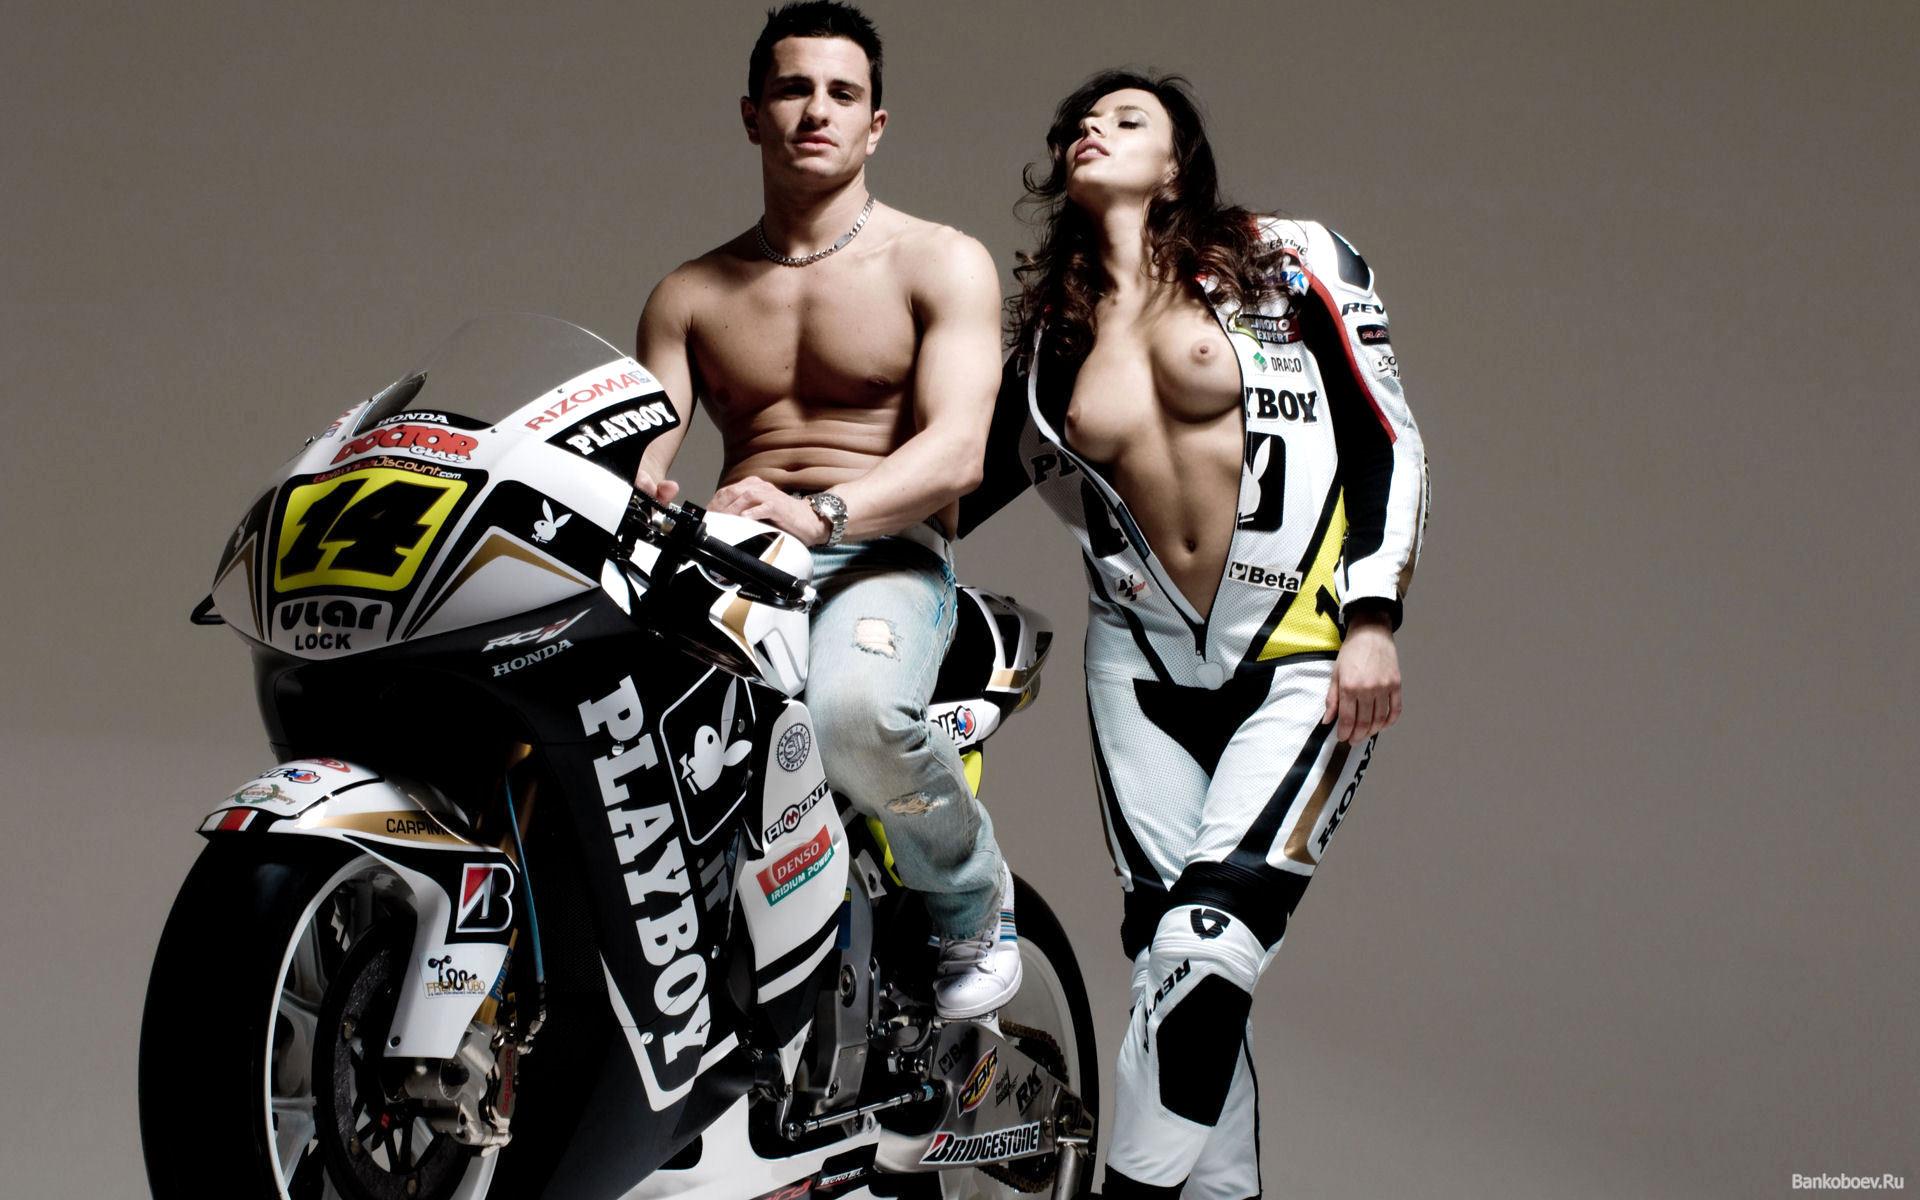 Мотоцикл, мужчина, девушка с голой грудью, костюмы 1920x1200